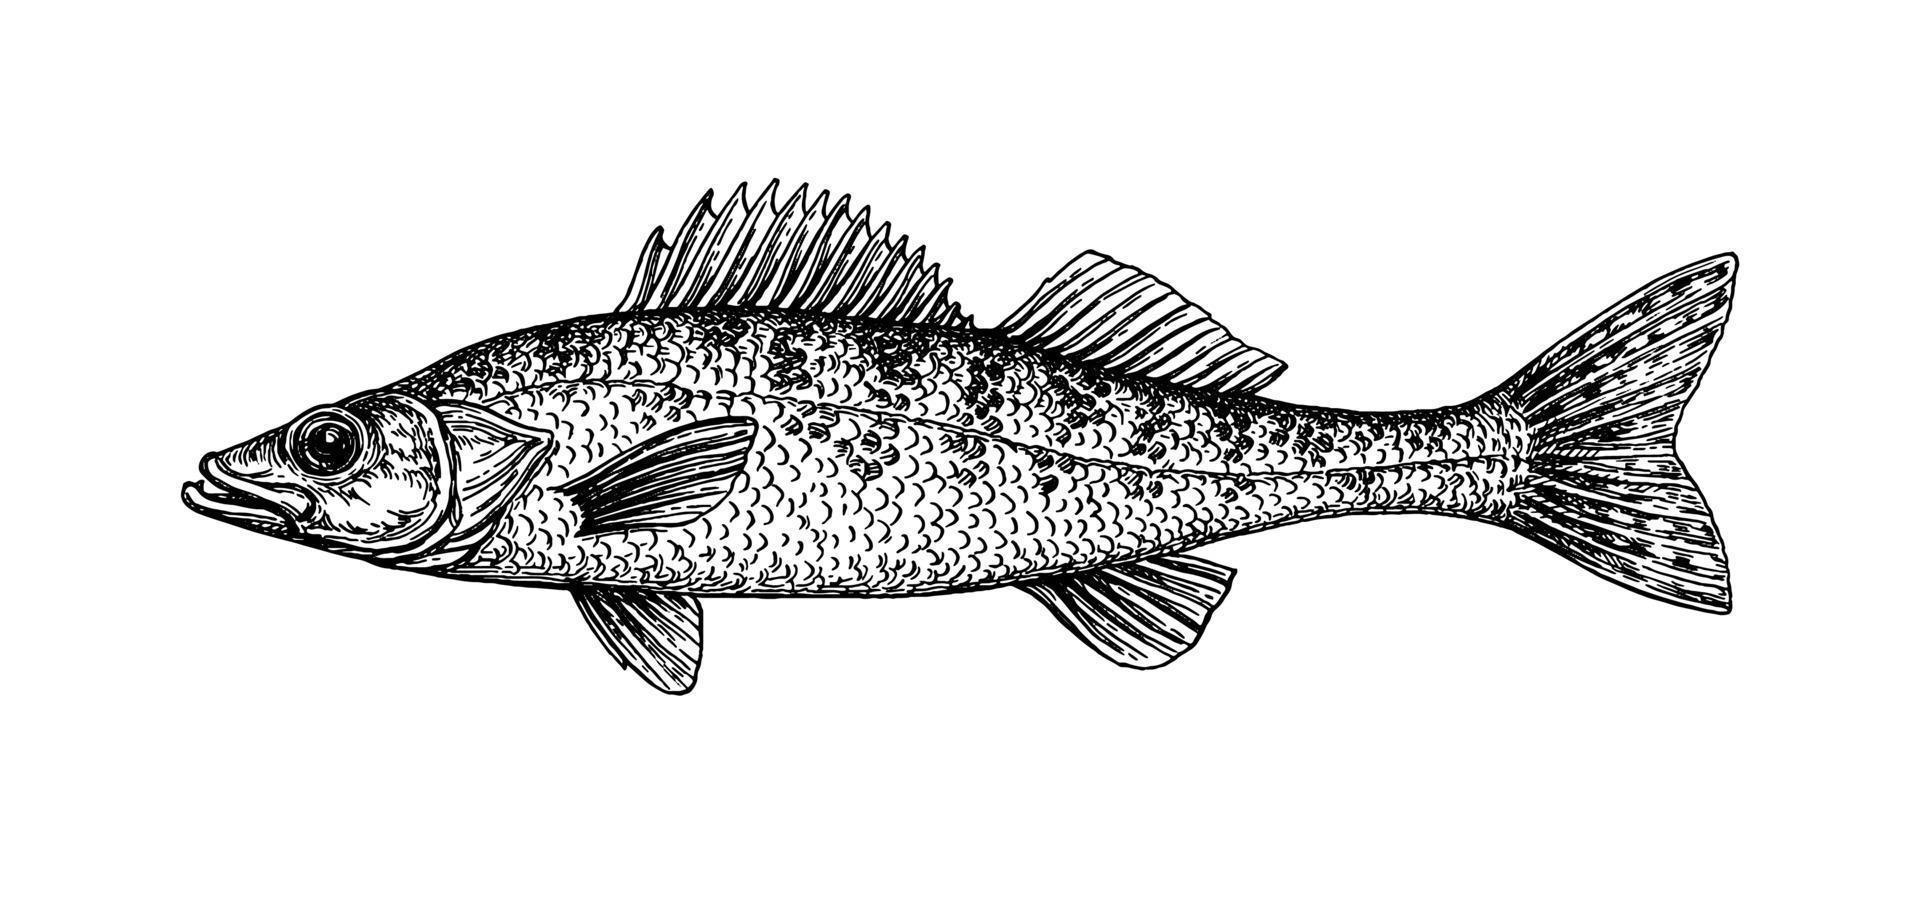 lucioperca o amarillo lucio. agua dulce pez. tinta bosquejo aislado en blanco antecedentes. mano dibujado vector ilustración. retro estilo.